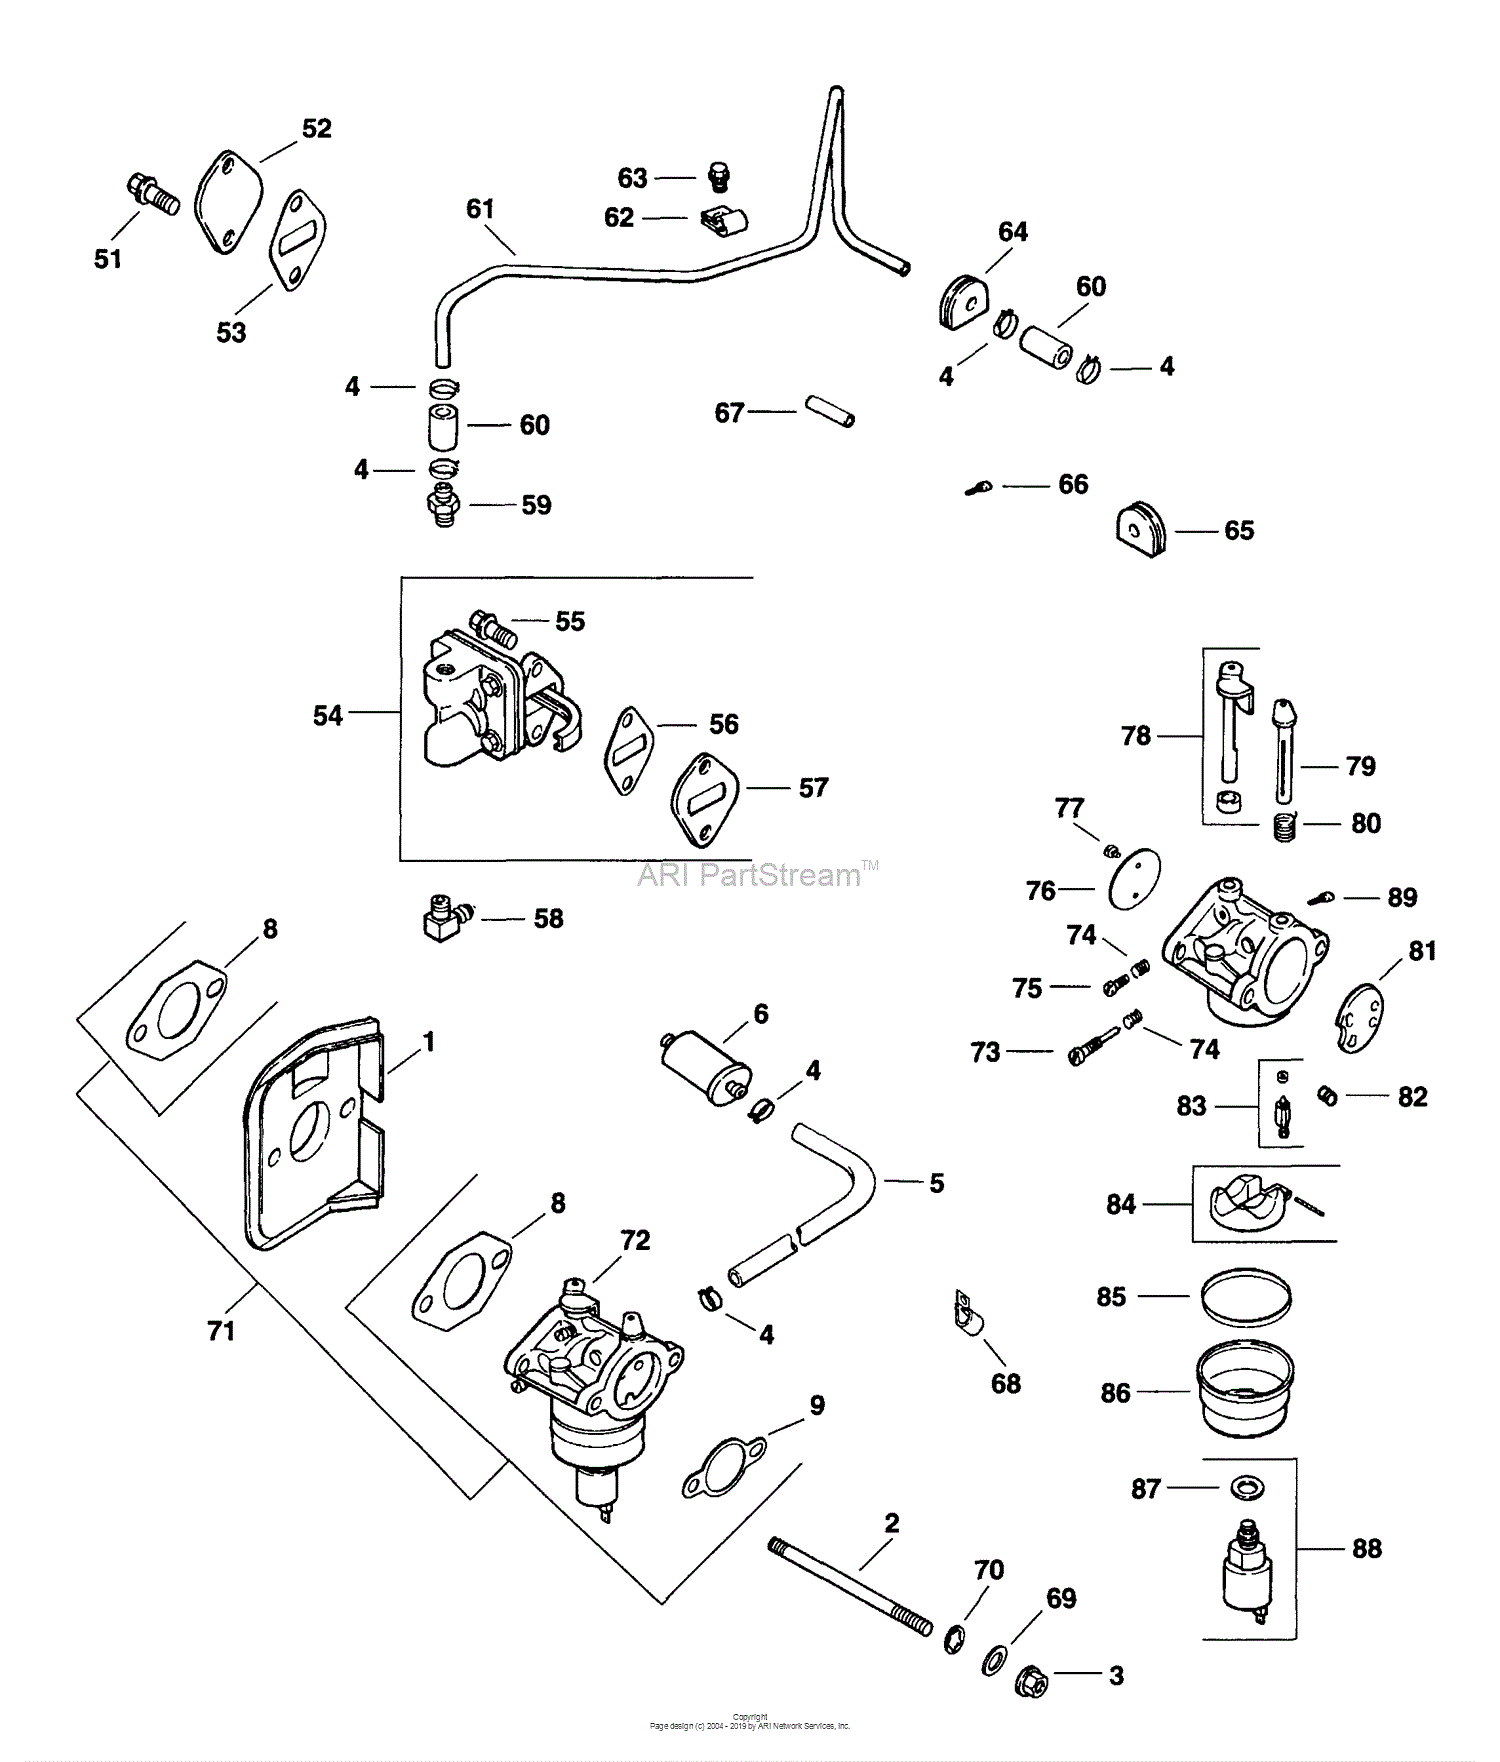 Kohler CV15-41548 SIMPLICITY 15 HP (11.2 kW) Parts Diagram for Fuel